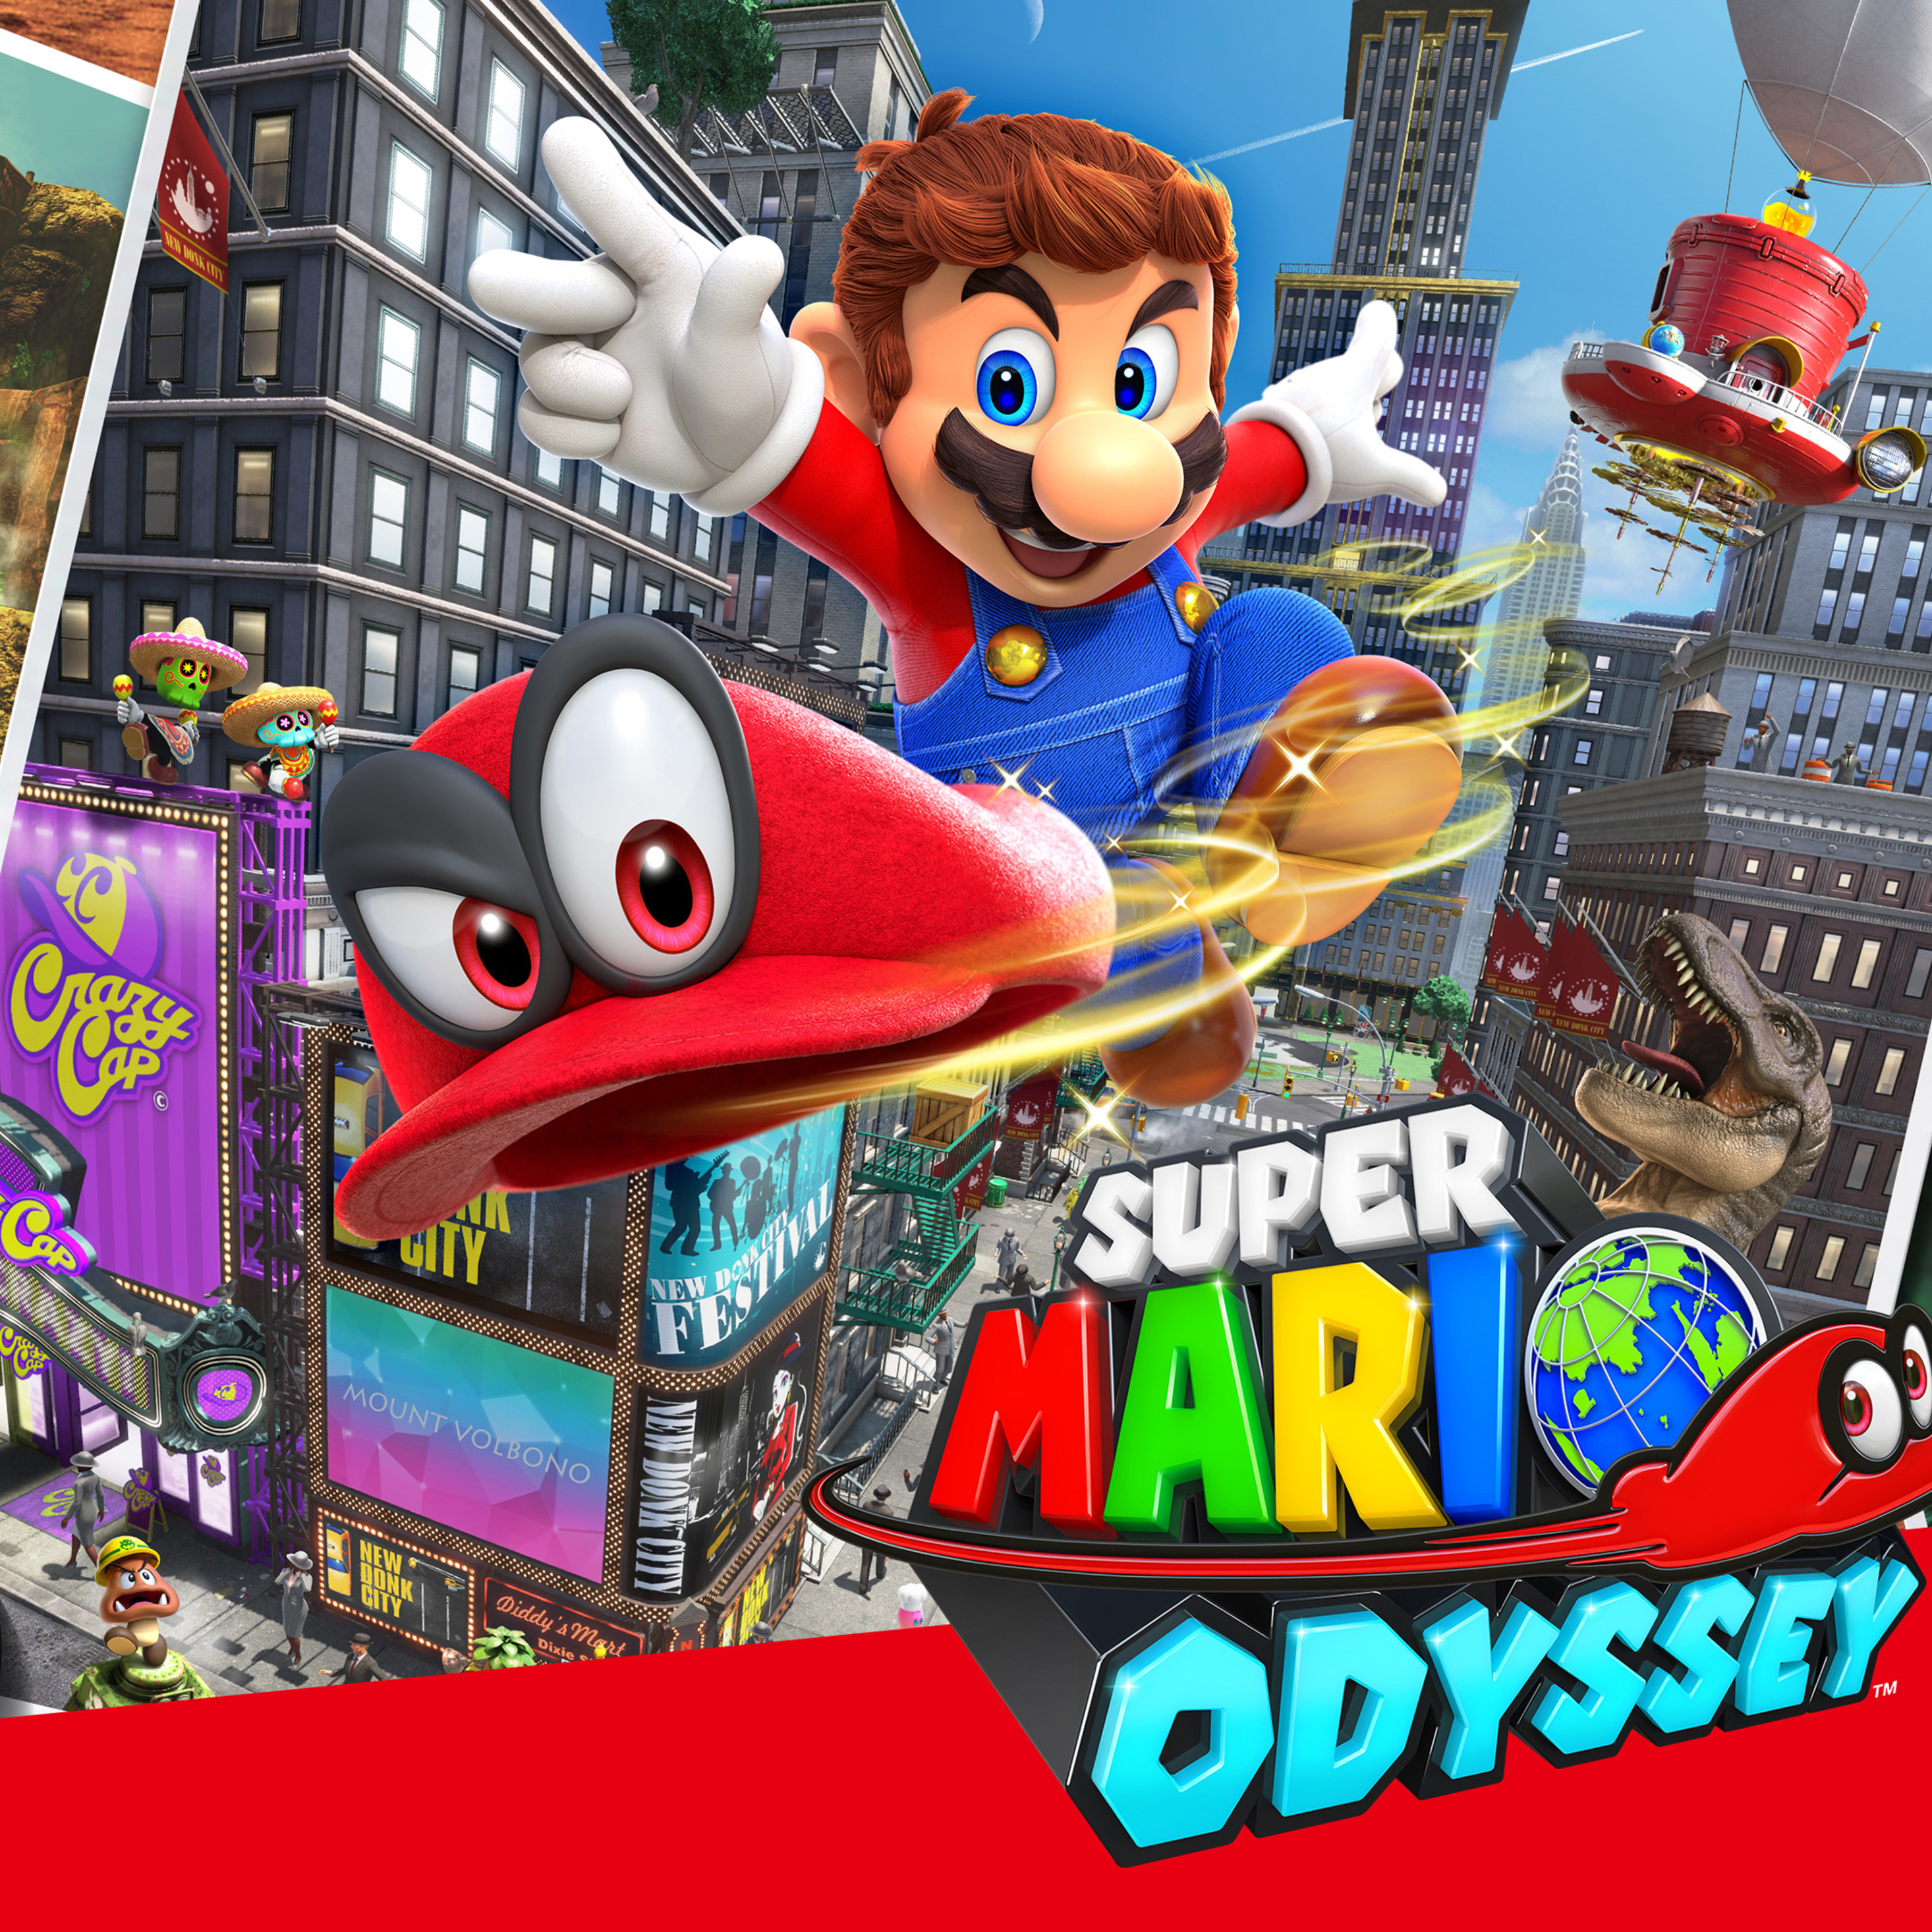 Марио одиссей купить. Super Mario Odyssey Nintendo. Игра супер Марио Одиссей. Игра Марио Одиссей Нинтендо. Супер Марио Одиссей Нинтендо свитч.